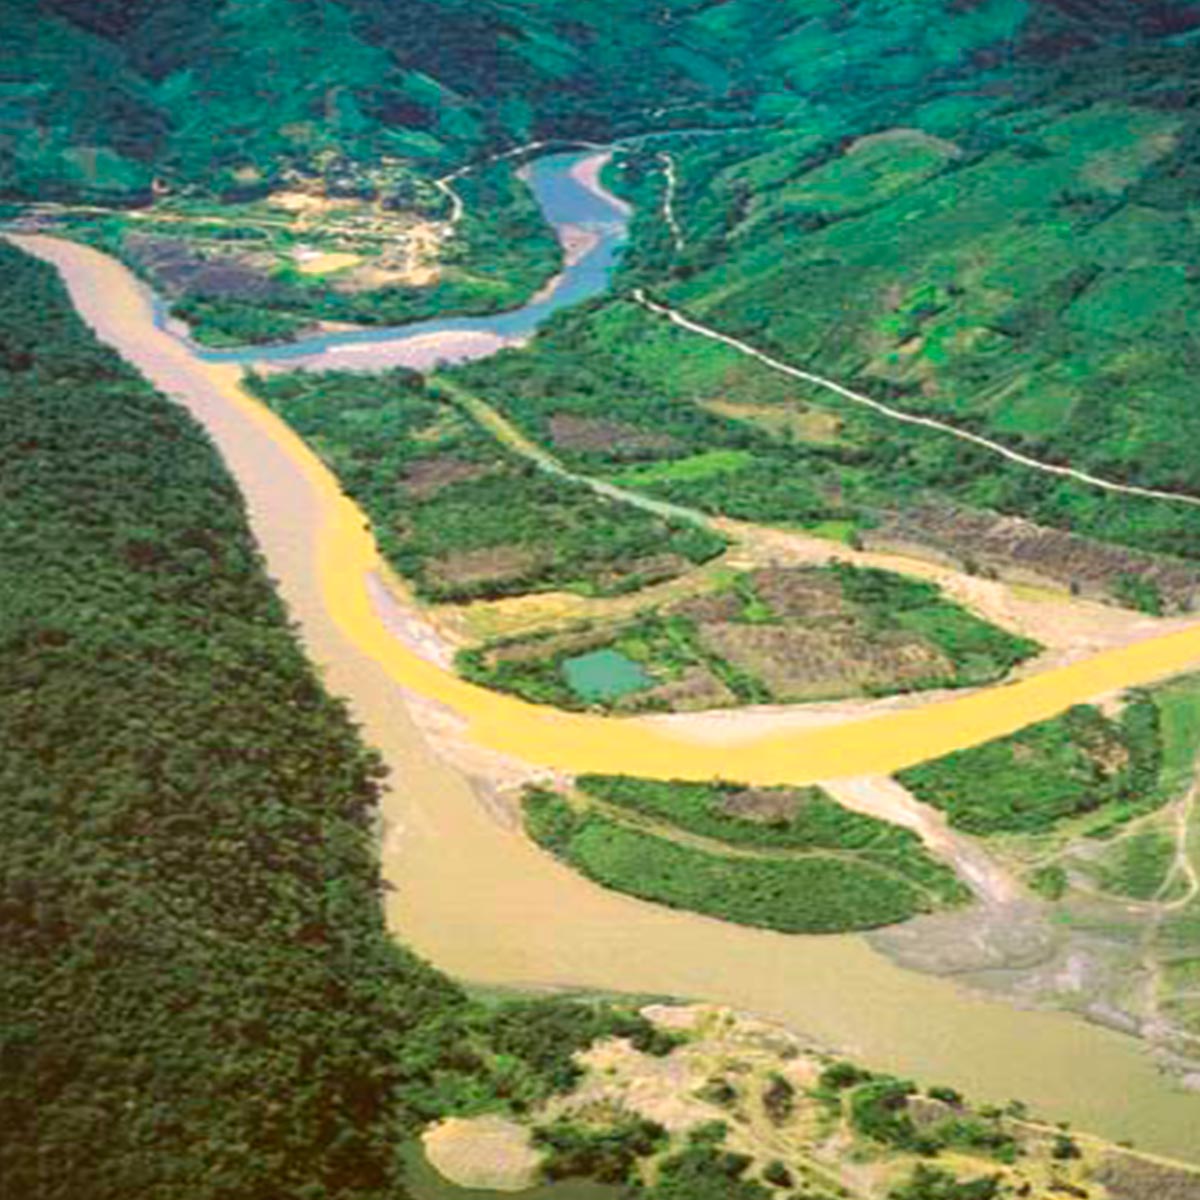 Rio Challana